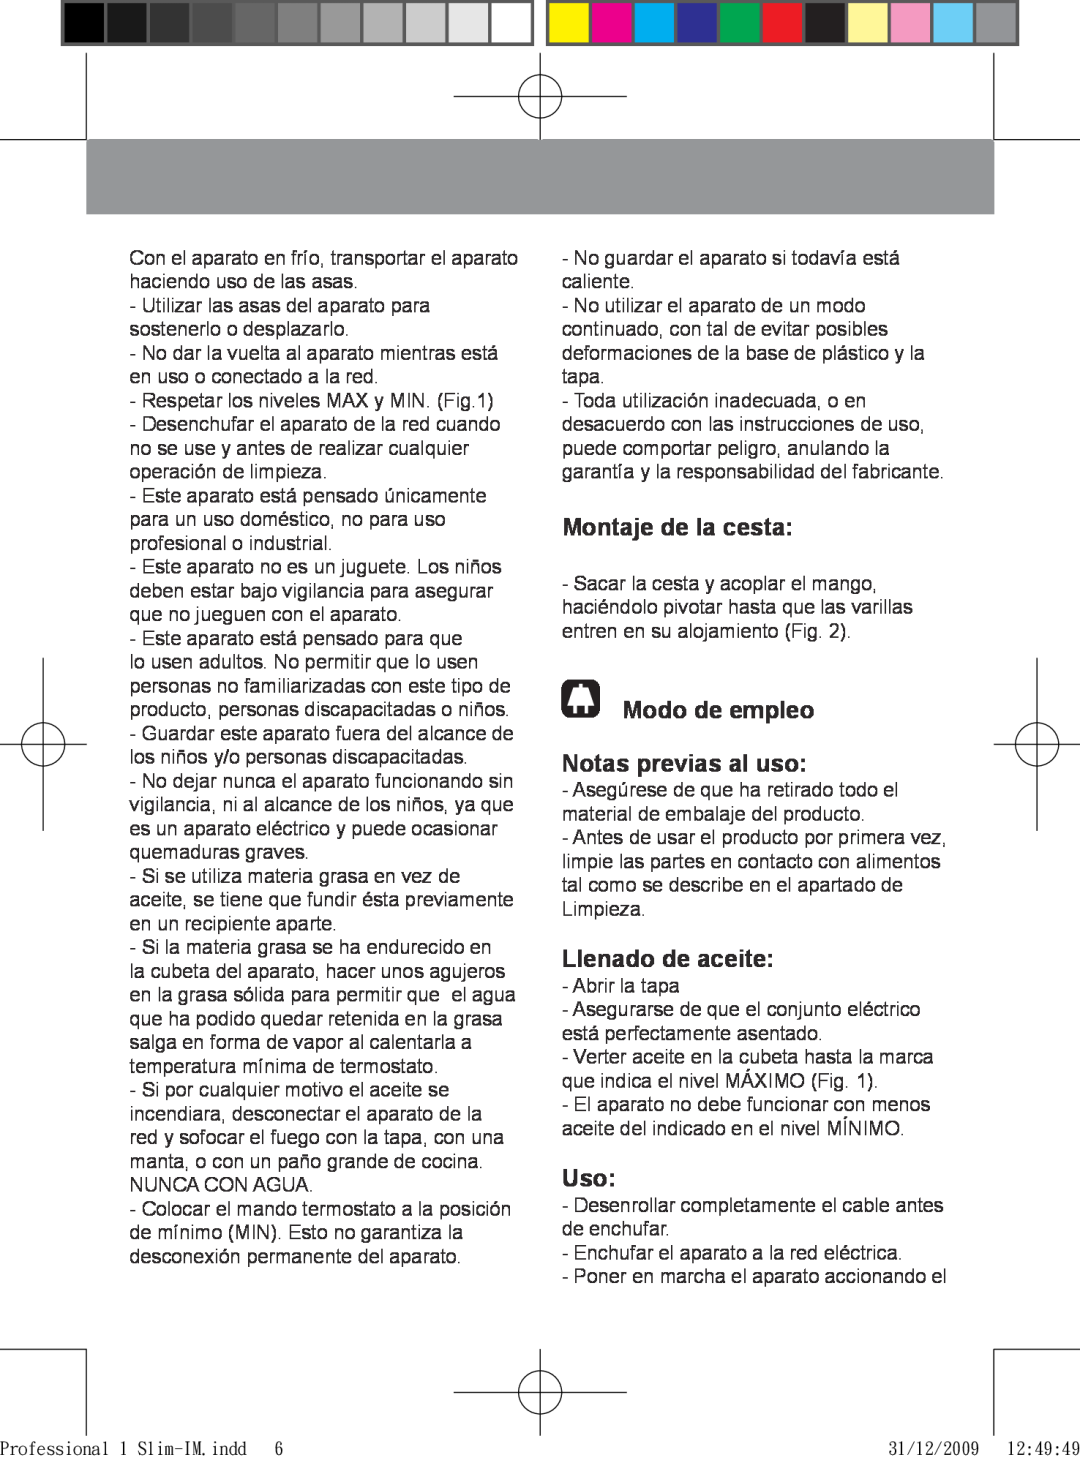 Taurus Group 1 Slim manual Montaje de la cesta, Modo de empleo Notas previas al uso, Llenado de aceite 